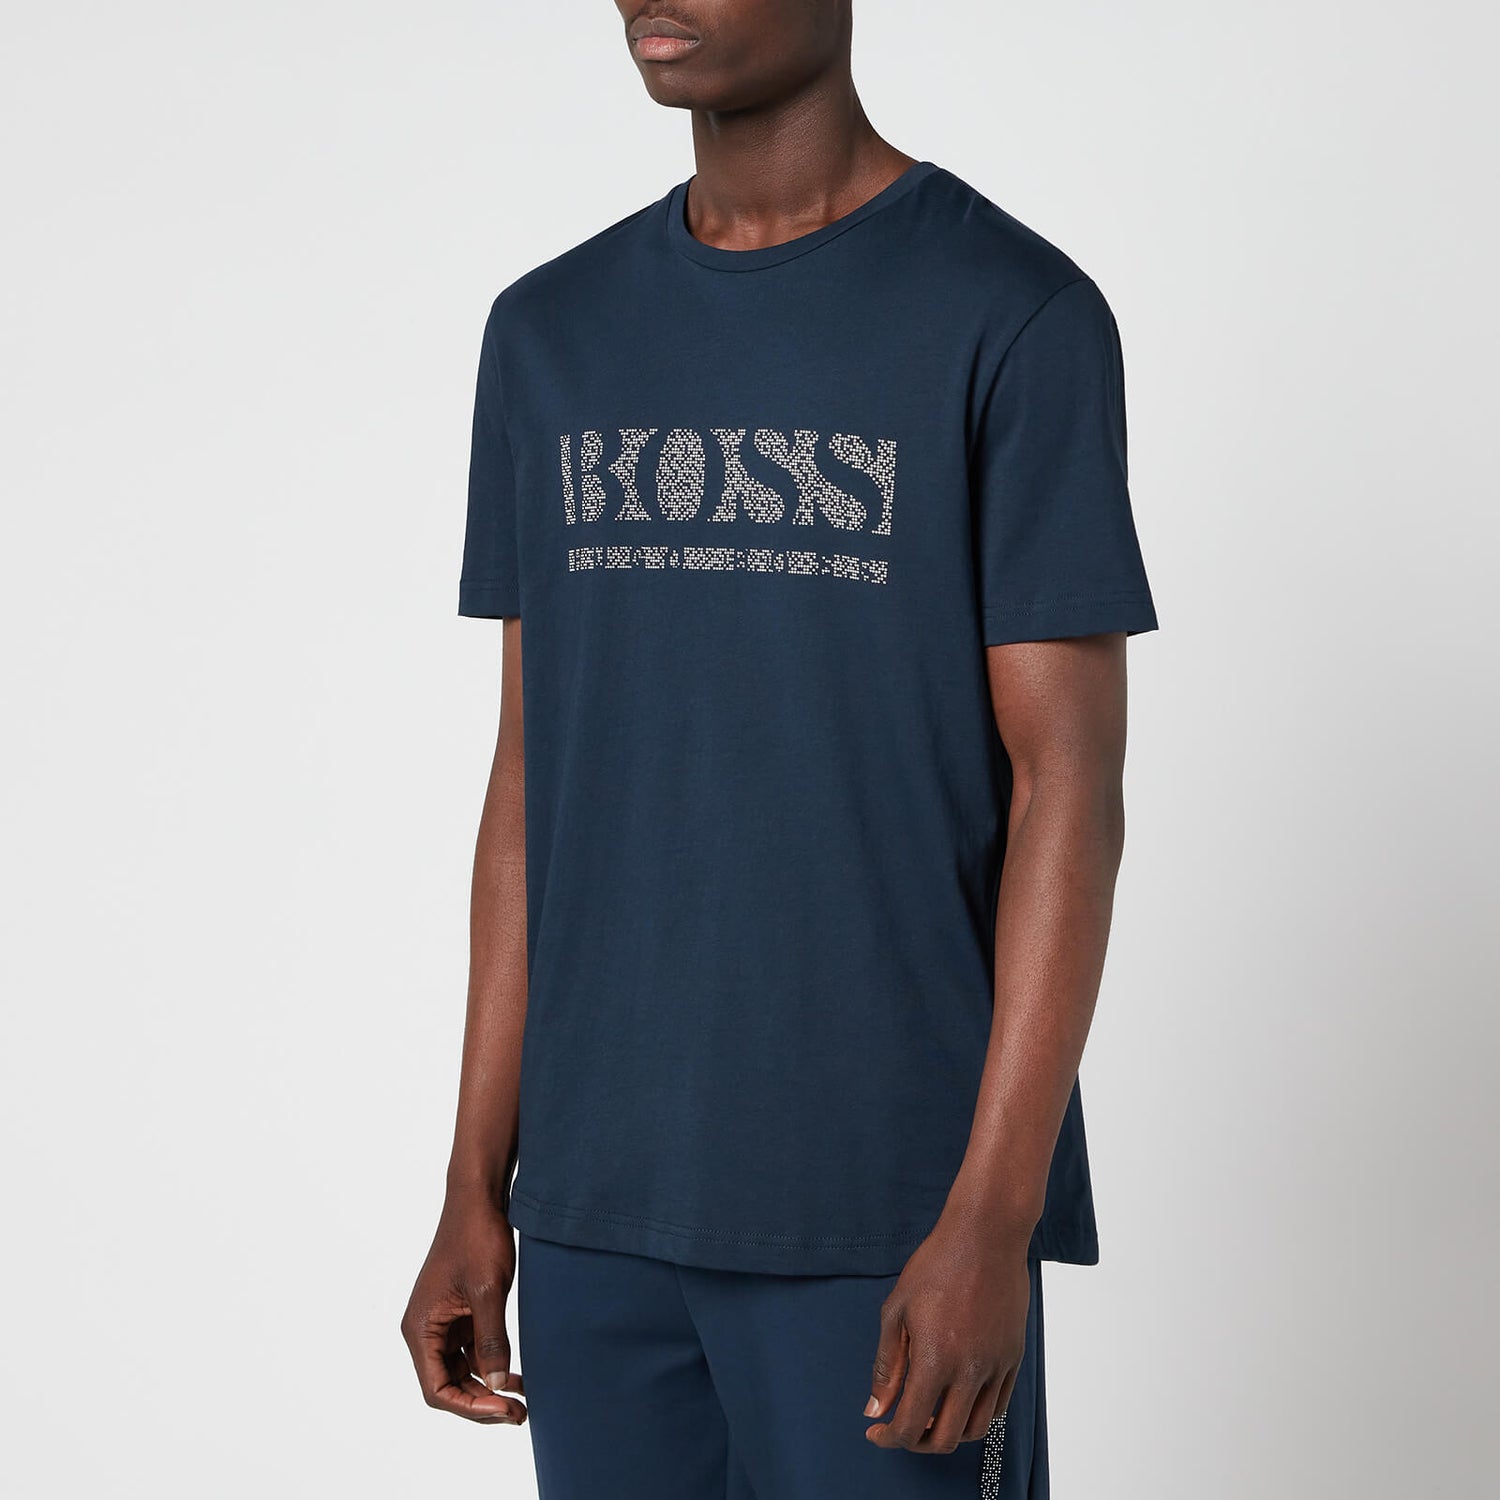 BOSS Athleisure Men's Pixel 1 T-Shirt - Navy - S